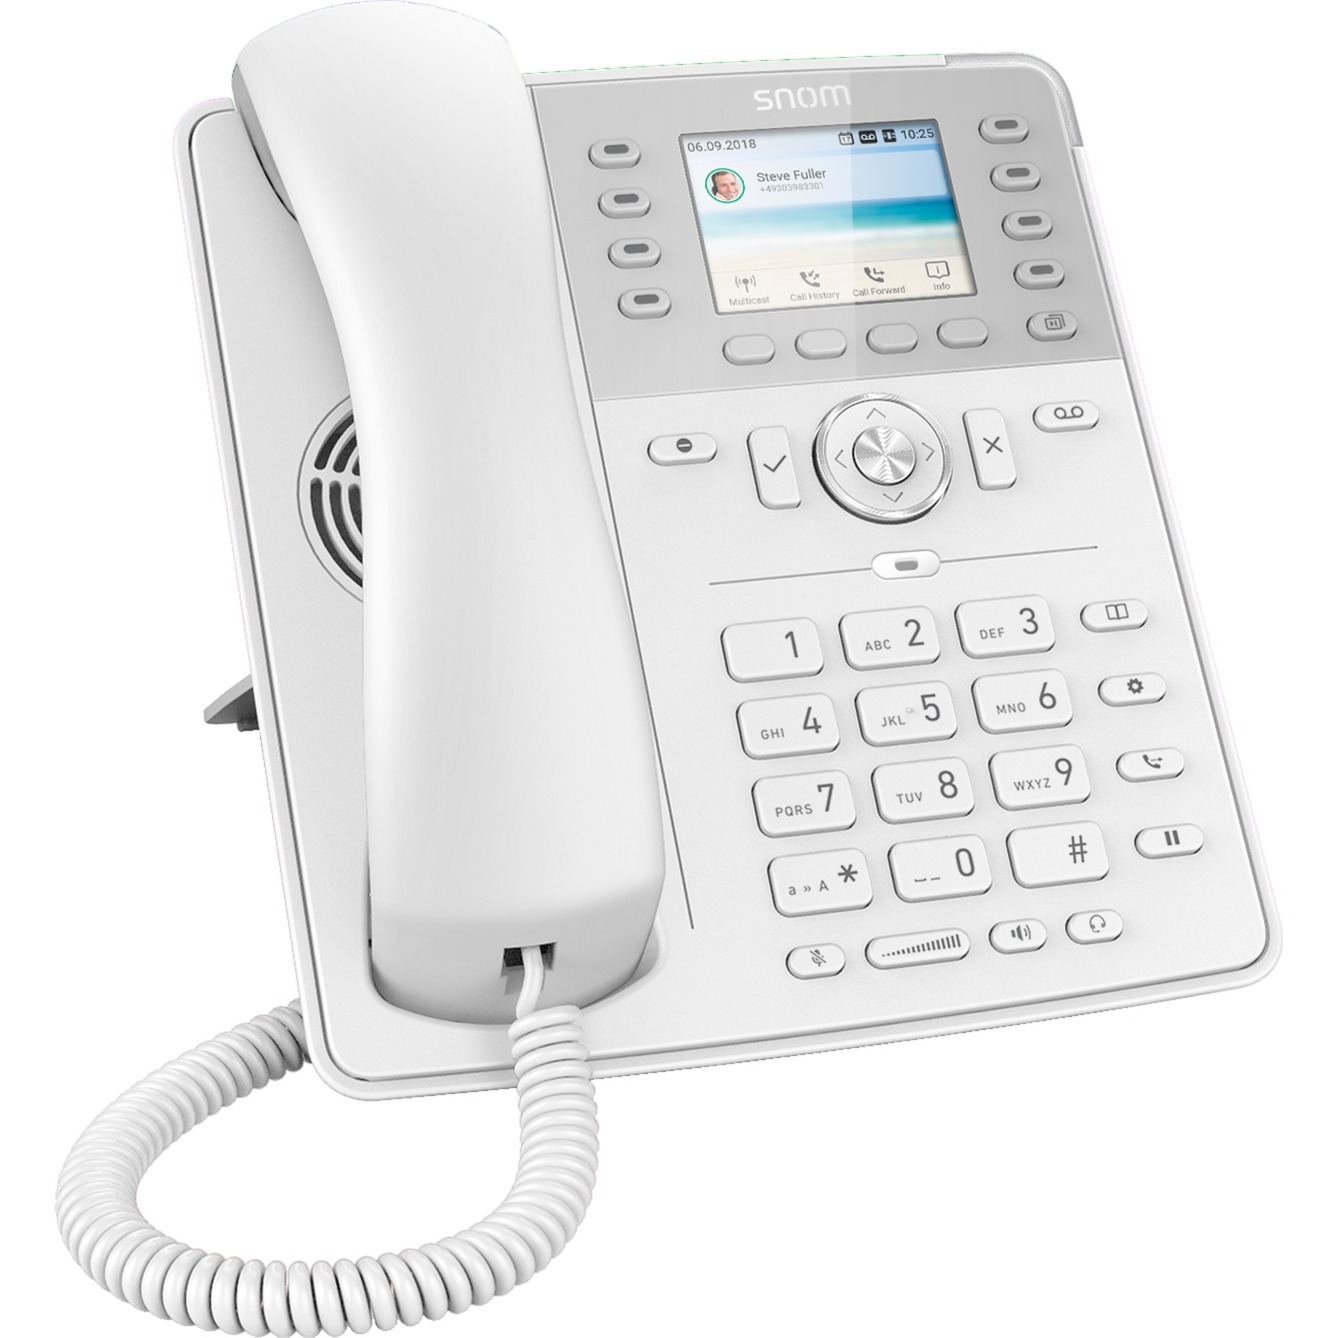 D735, VoIP-Telefon von Snom